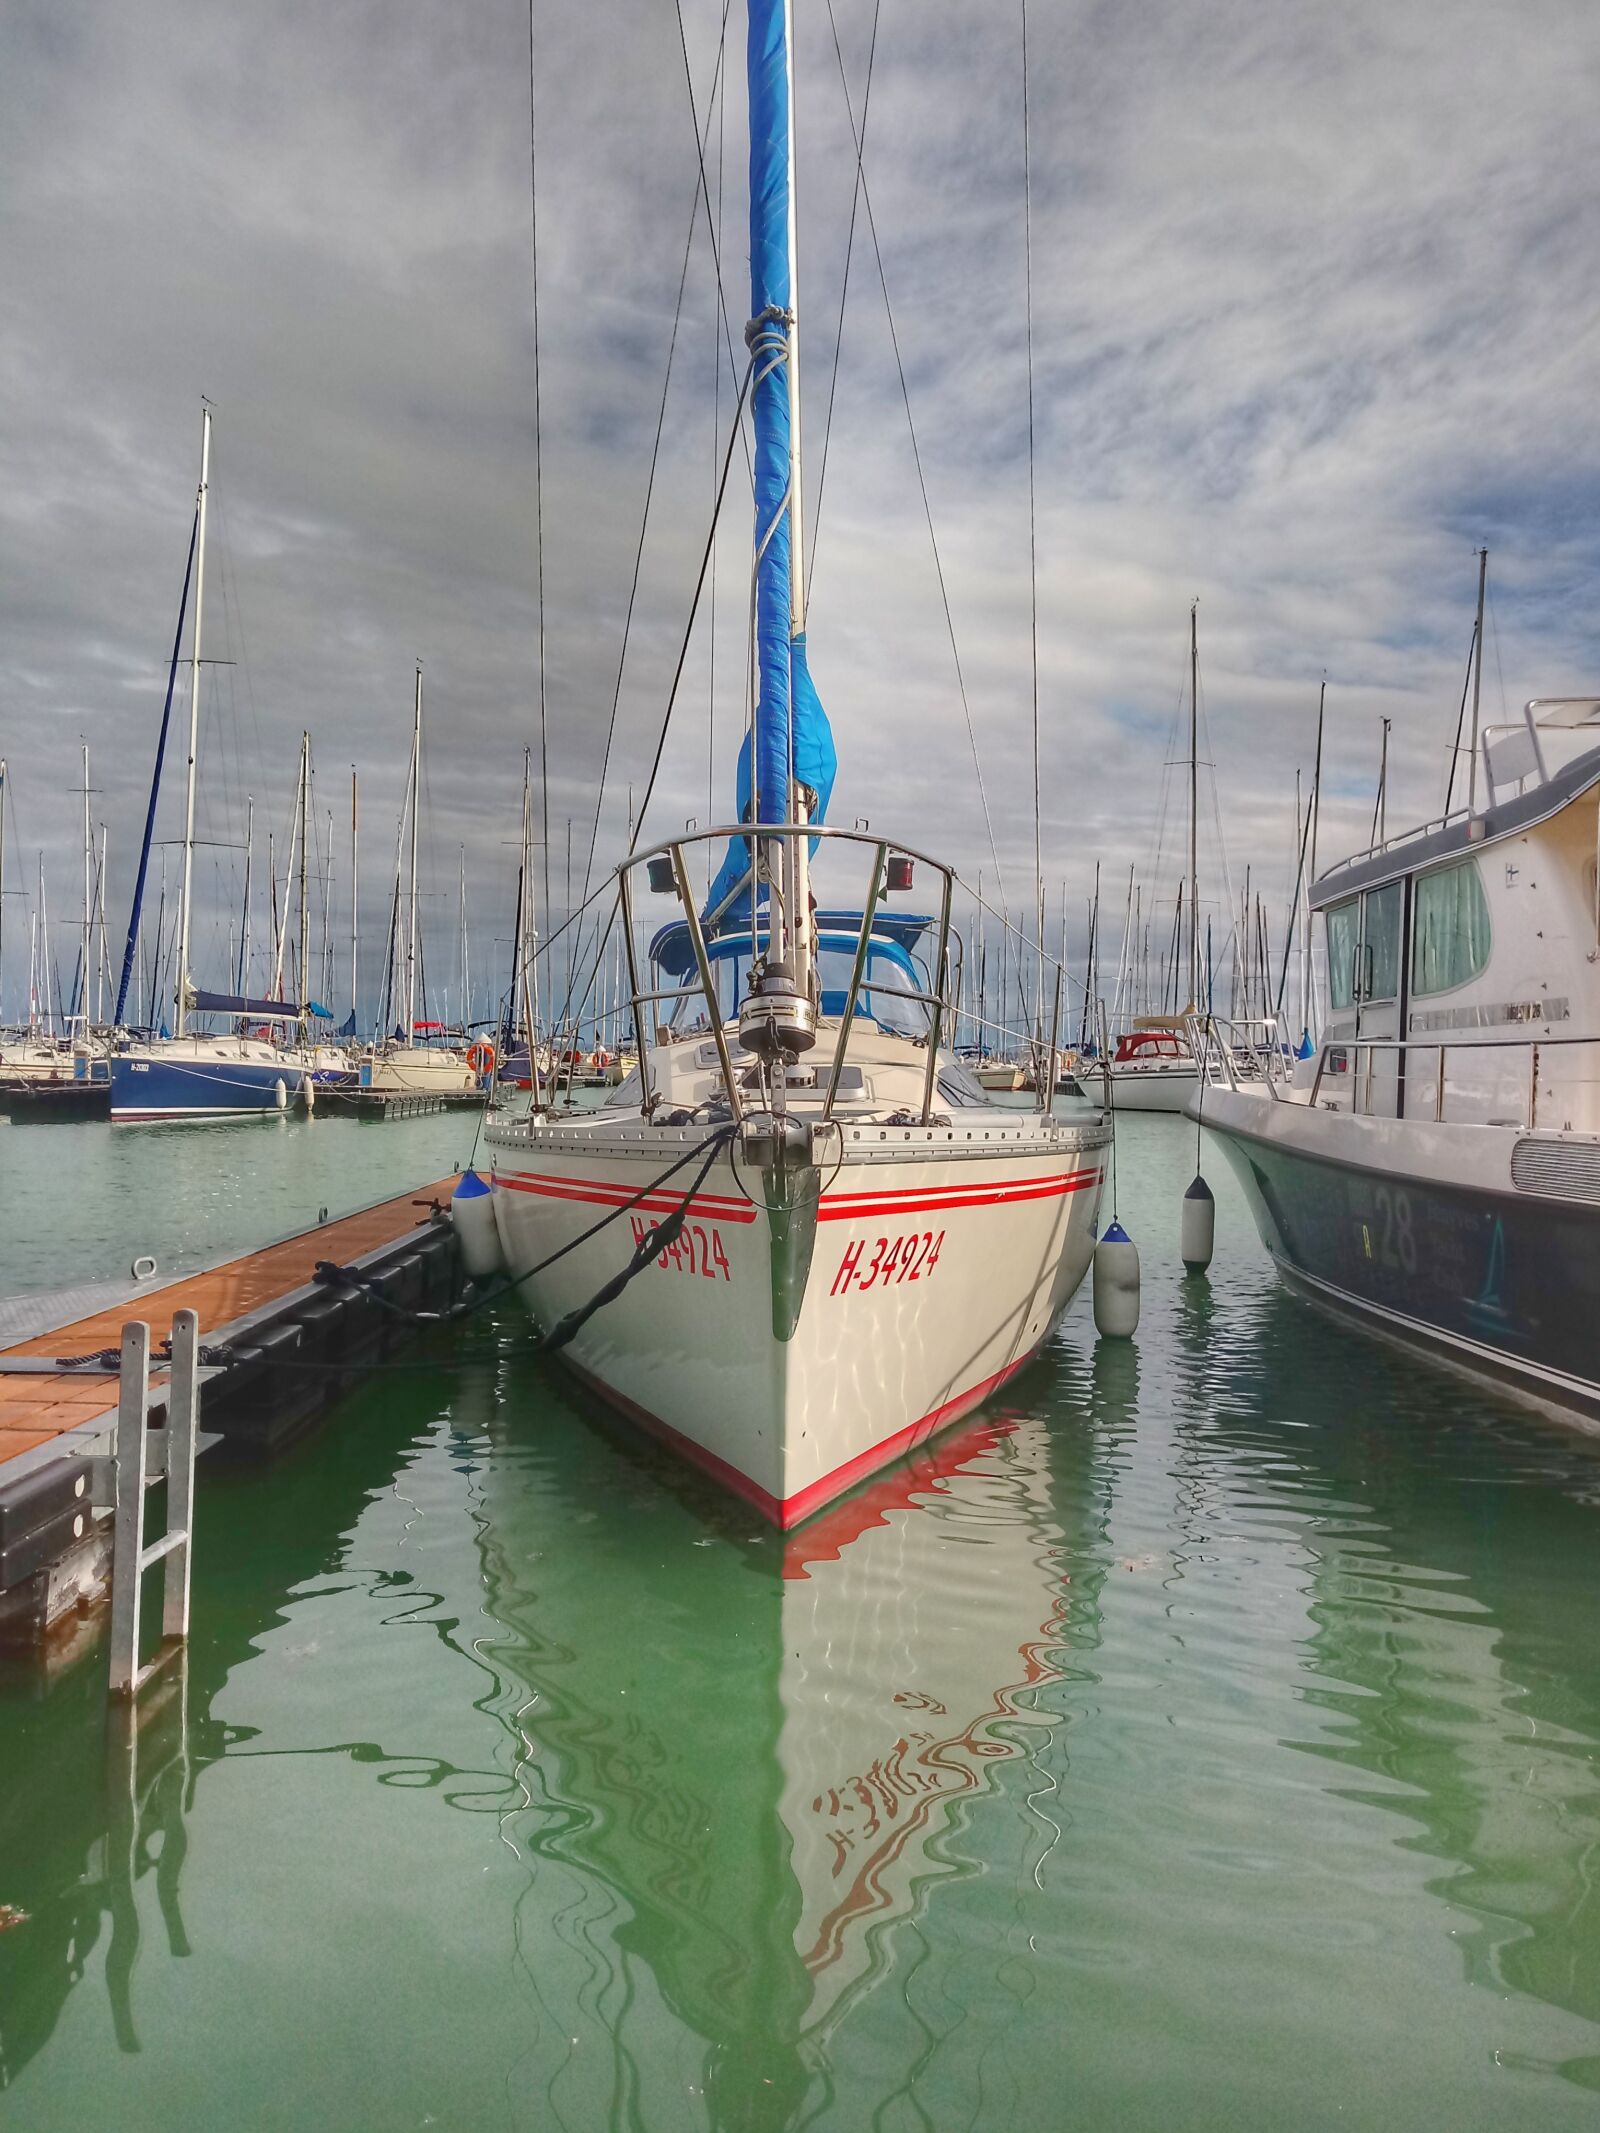 LG K10 (2017) sample photo. Boat, sailing, sailboat photography